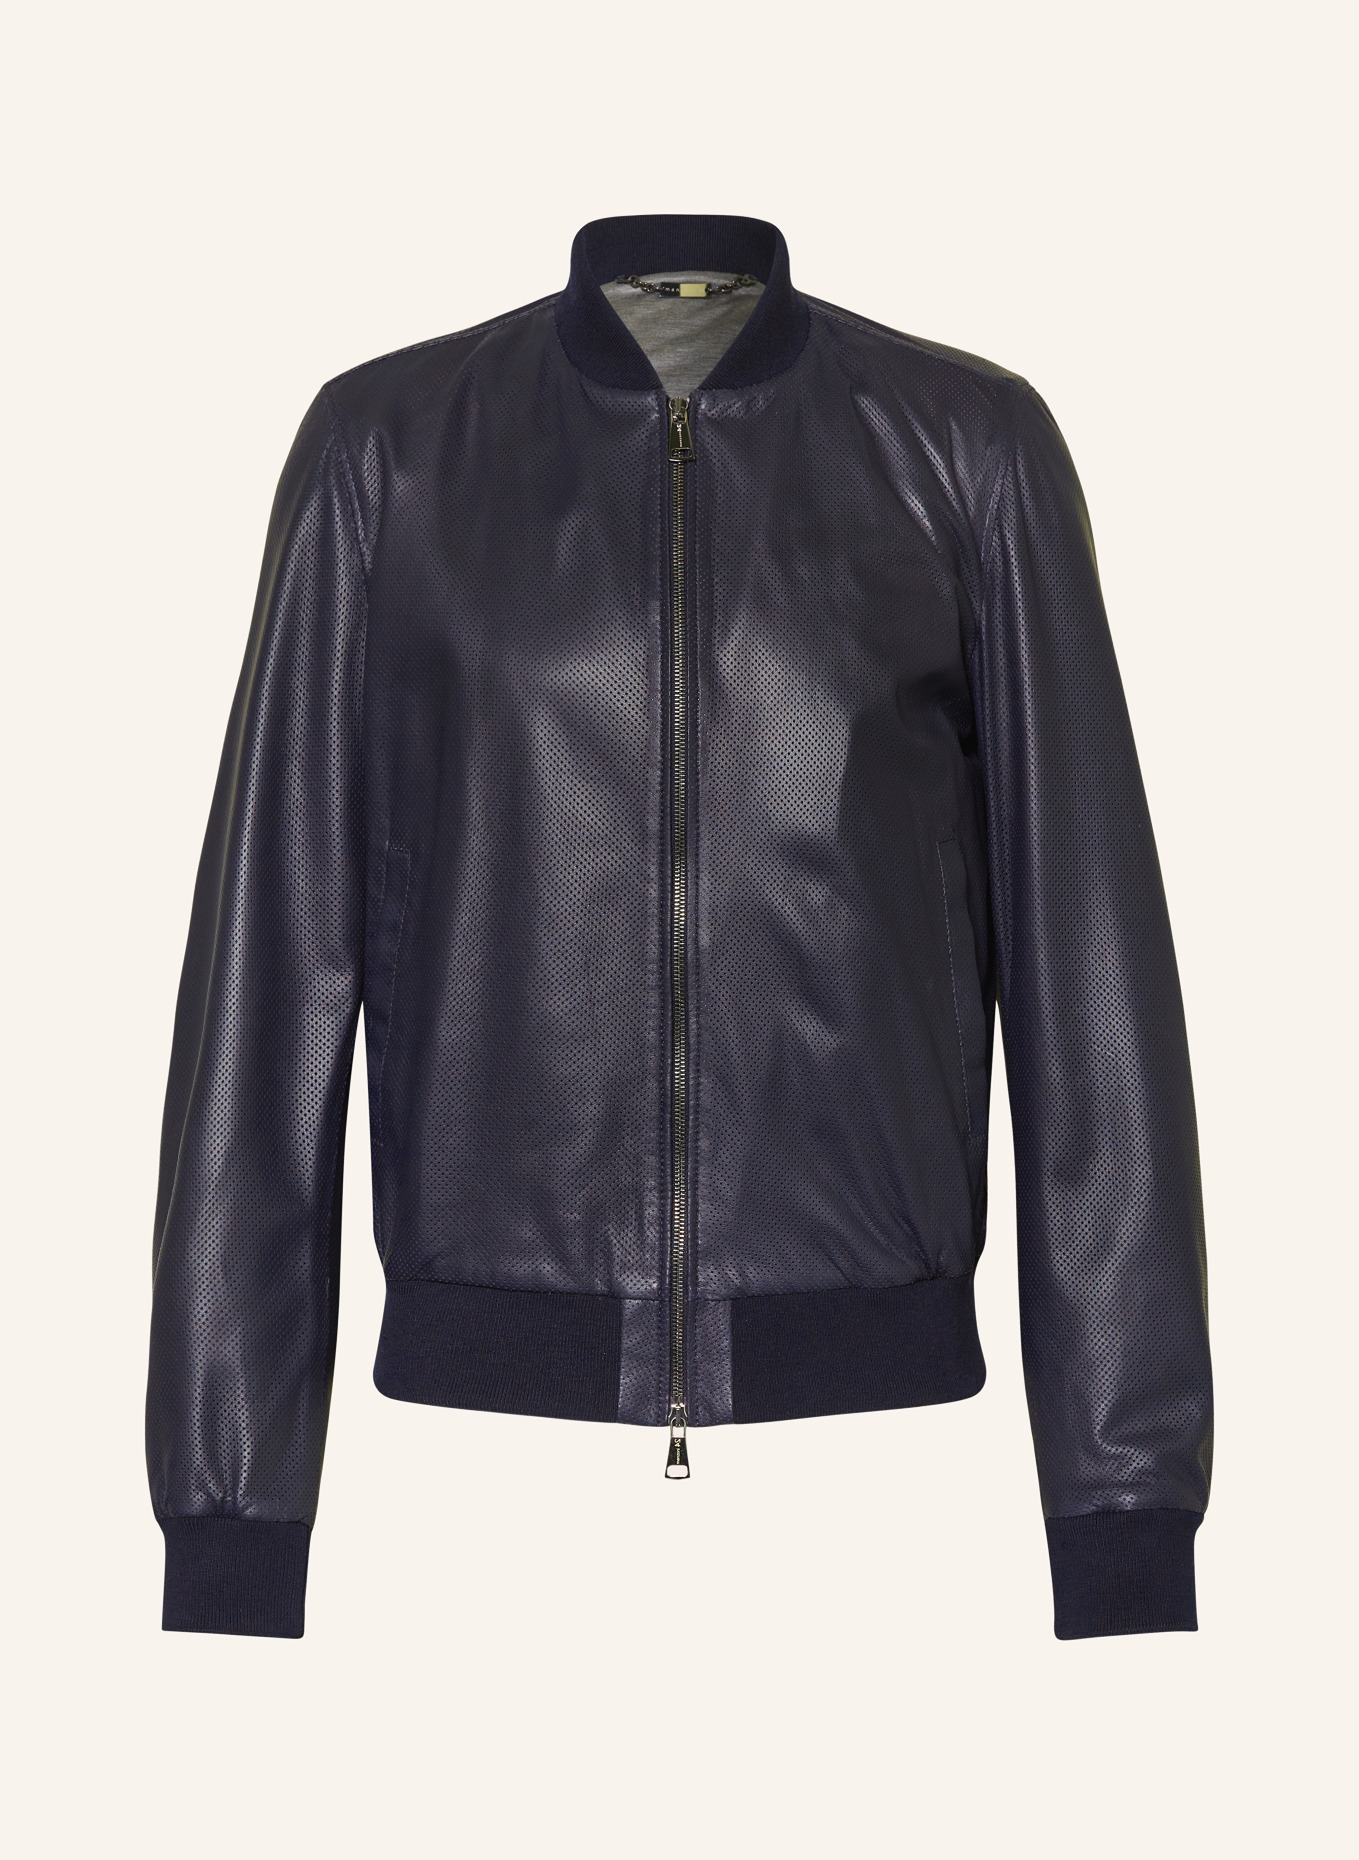 manzoni 24 Leather jacket, Color: DARK BLUE (Image 1)